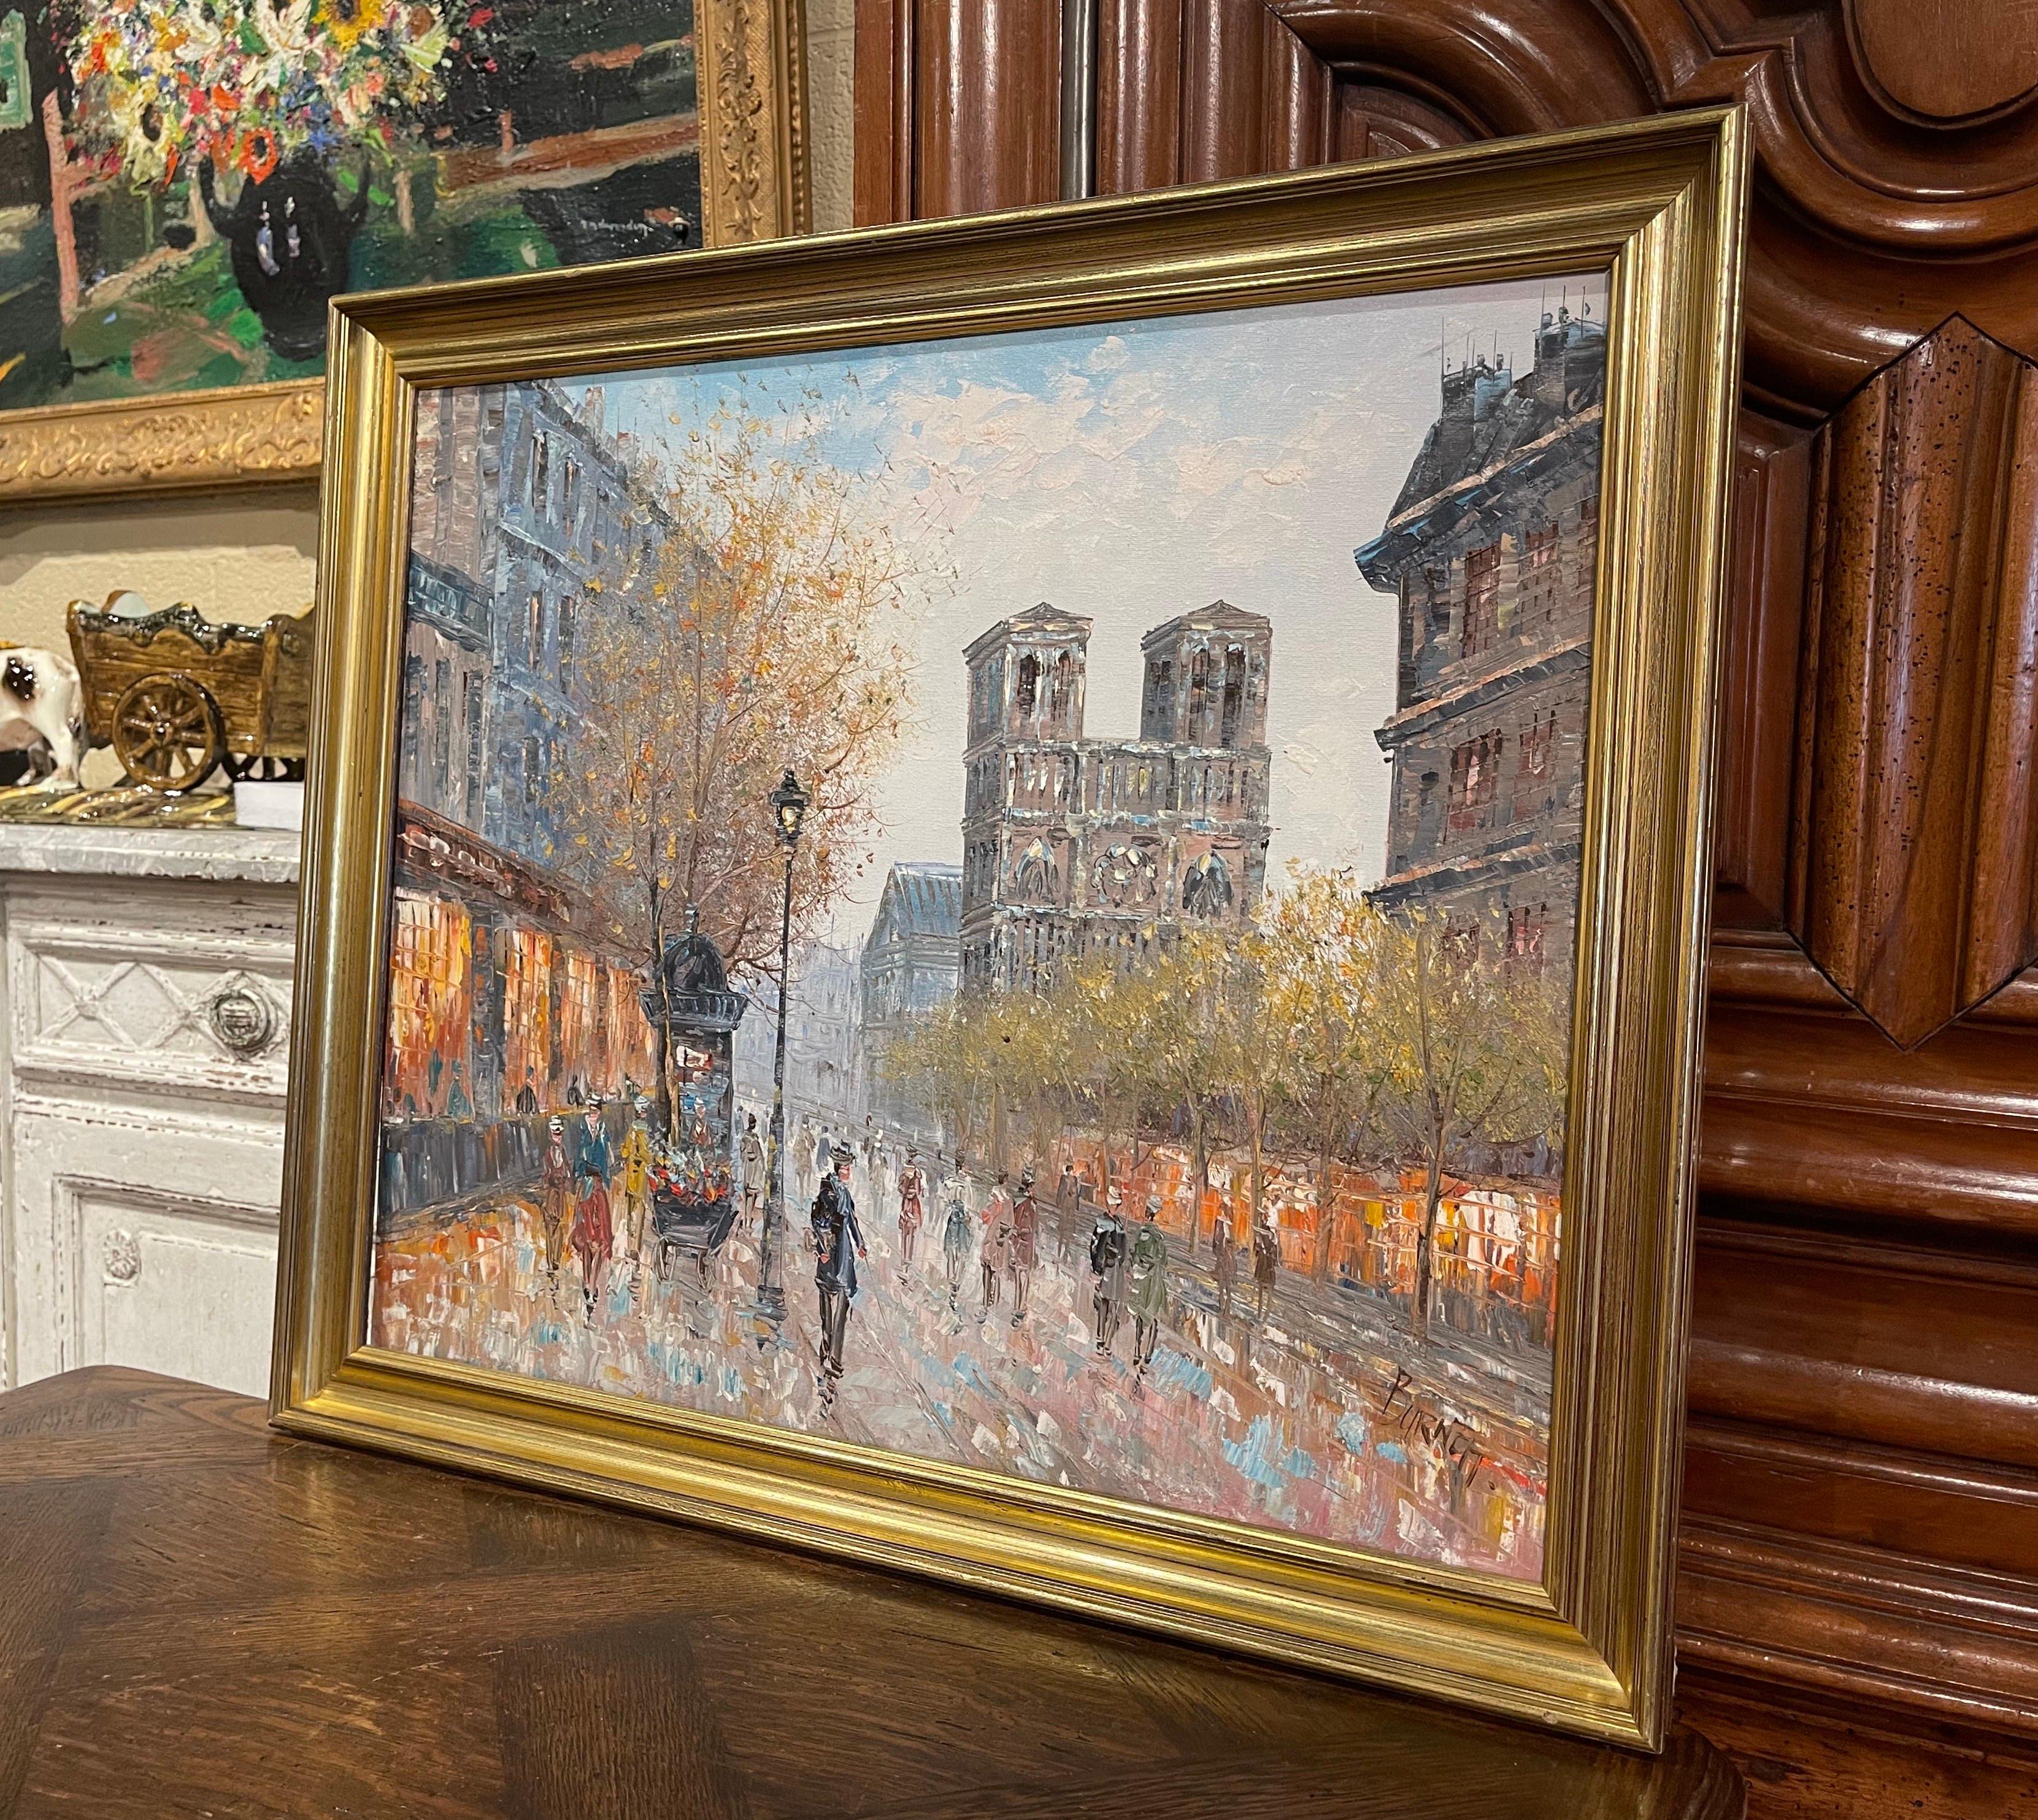 Présenté dans un cadre en bois doré sculpté, le tableau représente l'un des monuments les plus emblématiques de Paris, Notre-Dame ; l'œuvre de la cathédrale à l'aube est signée dans le coin inférieur droit par l'artiste, Caroline Burnett. L'huile